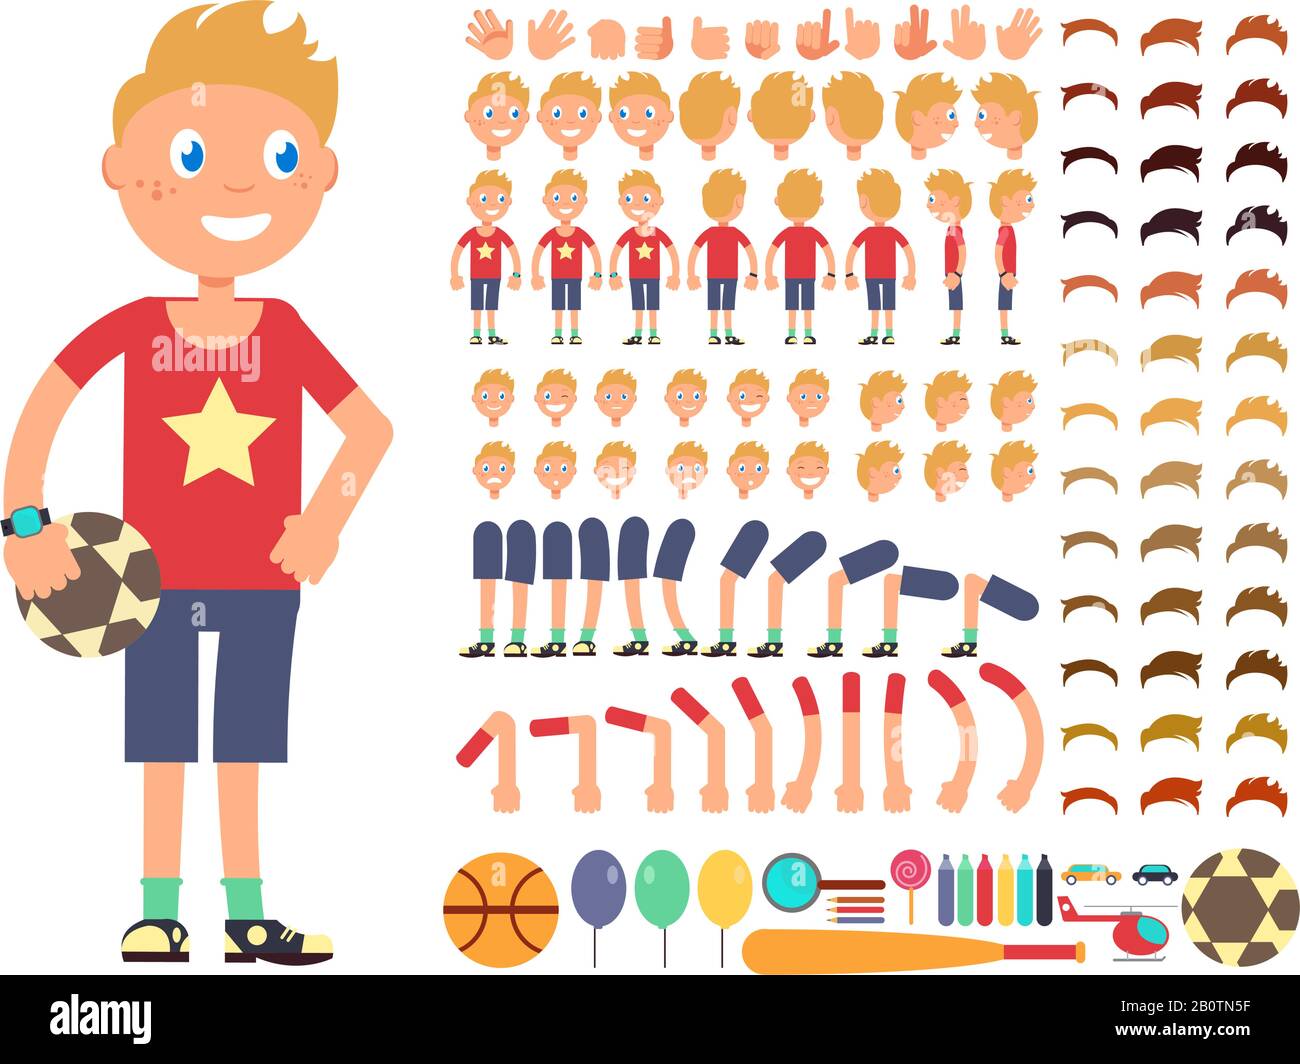 Cartoon-Junge-Figur. Vektorschaffender Konstruktor mit verschiedenen Emotionen und Körperteilen. Konstruktor Junge Figur Kopf Bein und Hand Illustration Stock Vektor